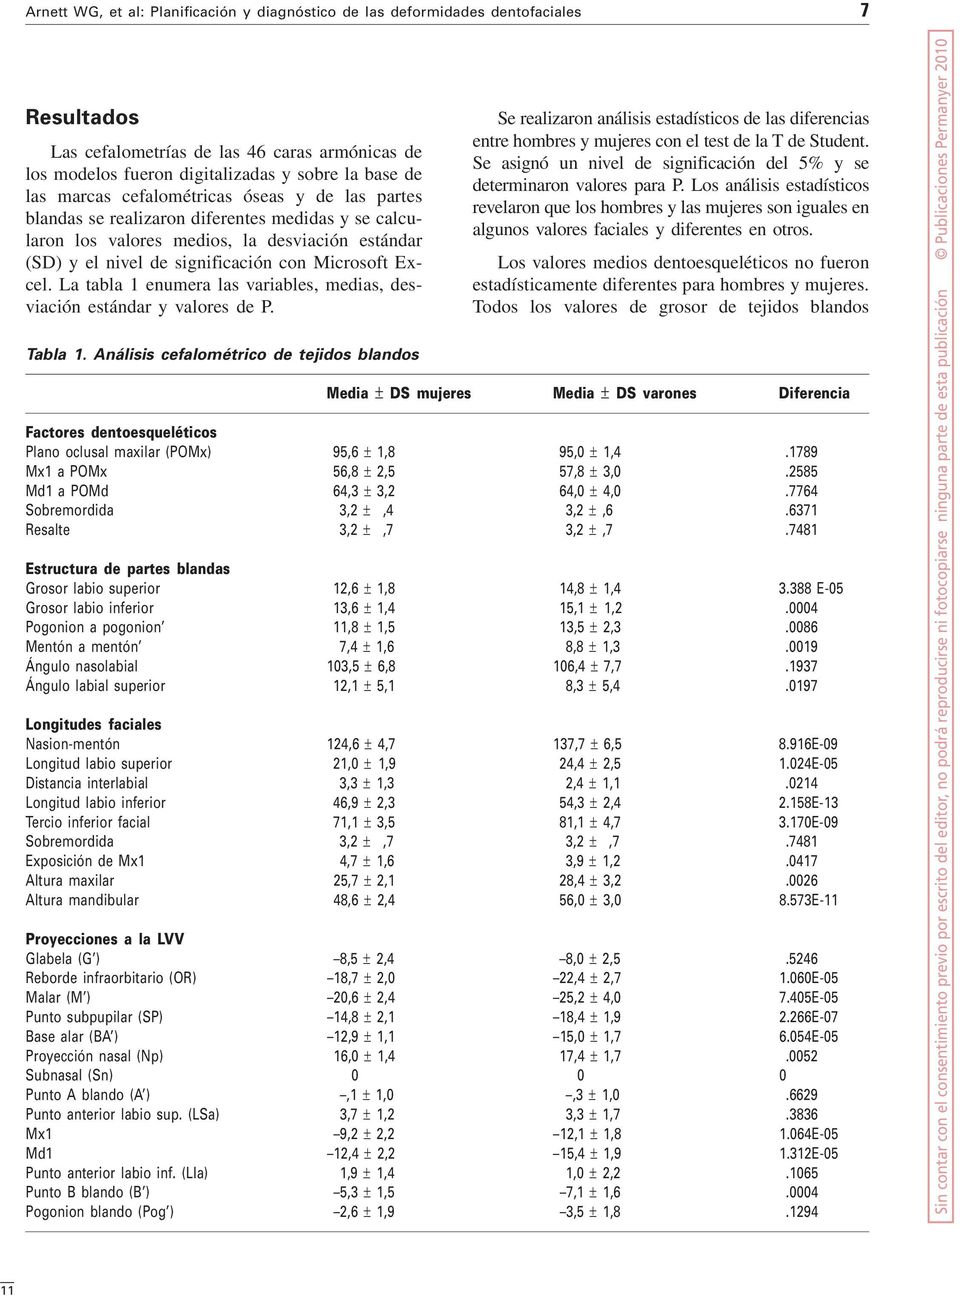 Tabla 1. Análisis cefalométrico de tejidos blandos Se realizaron análisis estadísticos de las diferencias entre hombres y mujeres con el test de la T de Student.